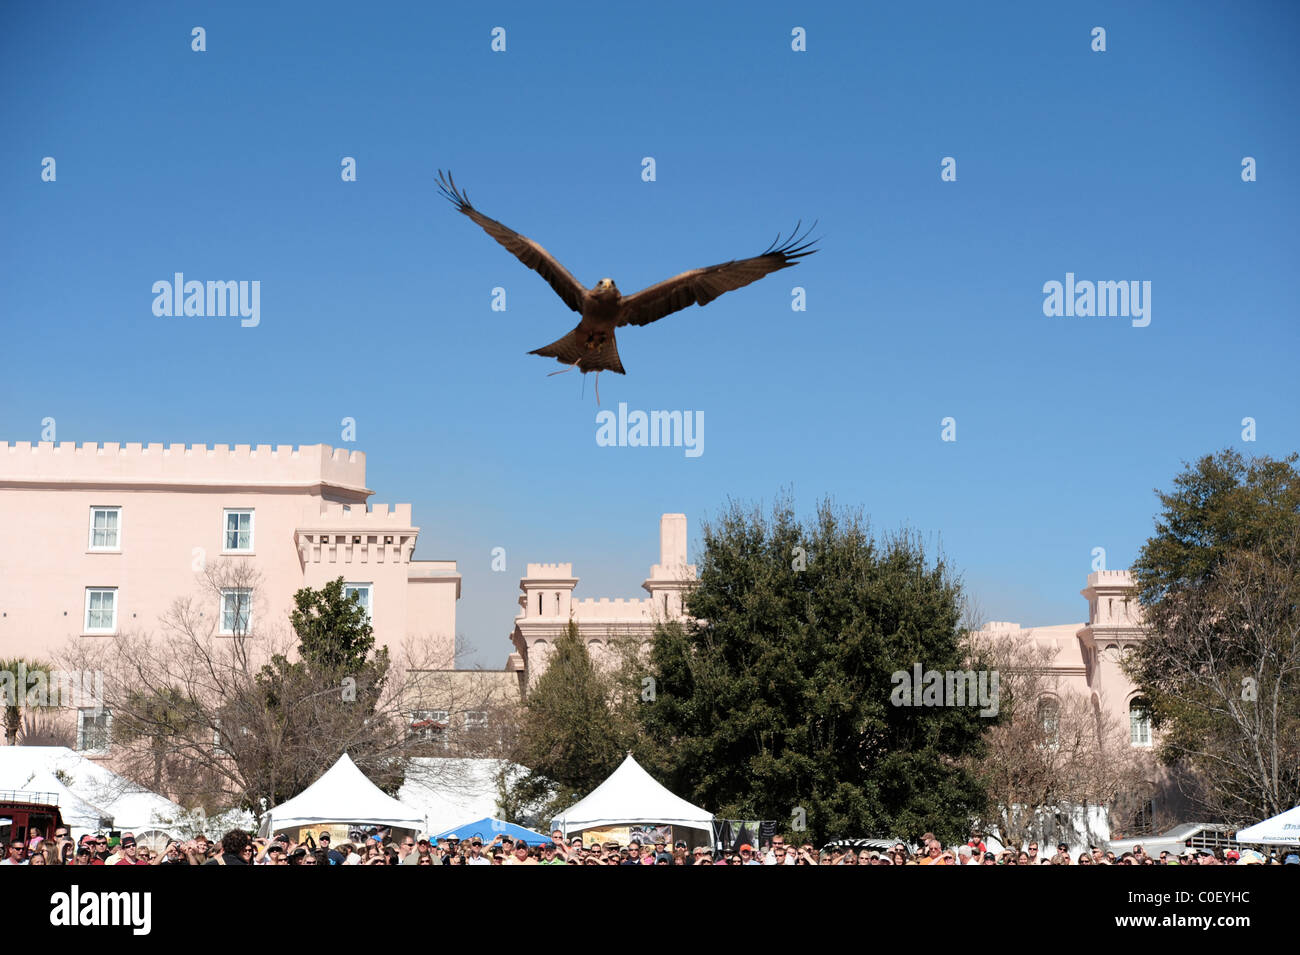 Aigle en vol au-dessus de spectateurs lors de la démonstration d'oiseaux de proie Banque D'Images